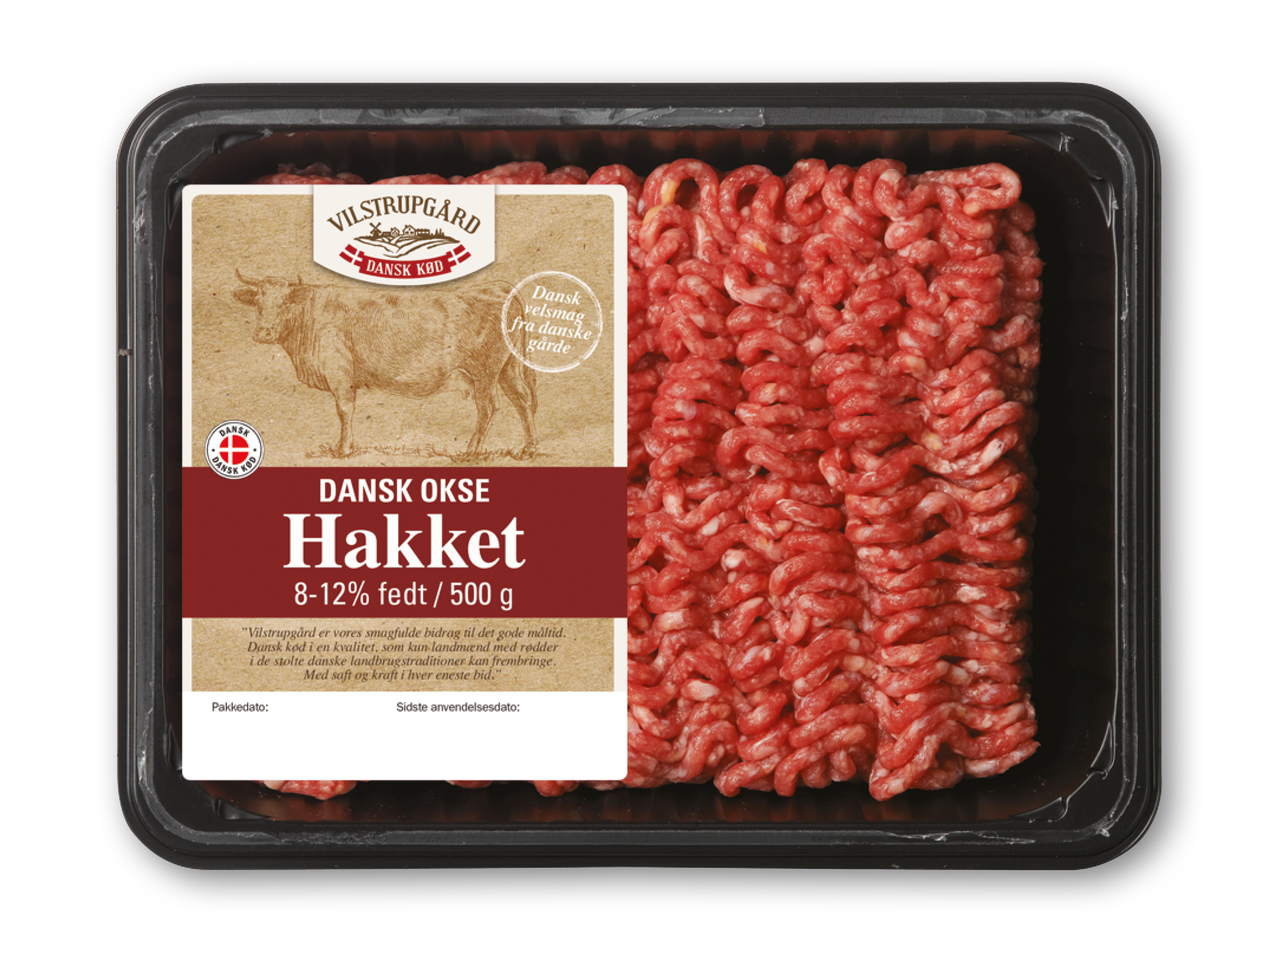 VILSTRUPGÅRD Hakket dansk oksekød